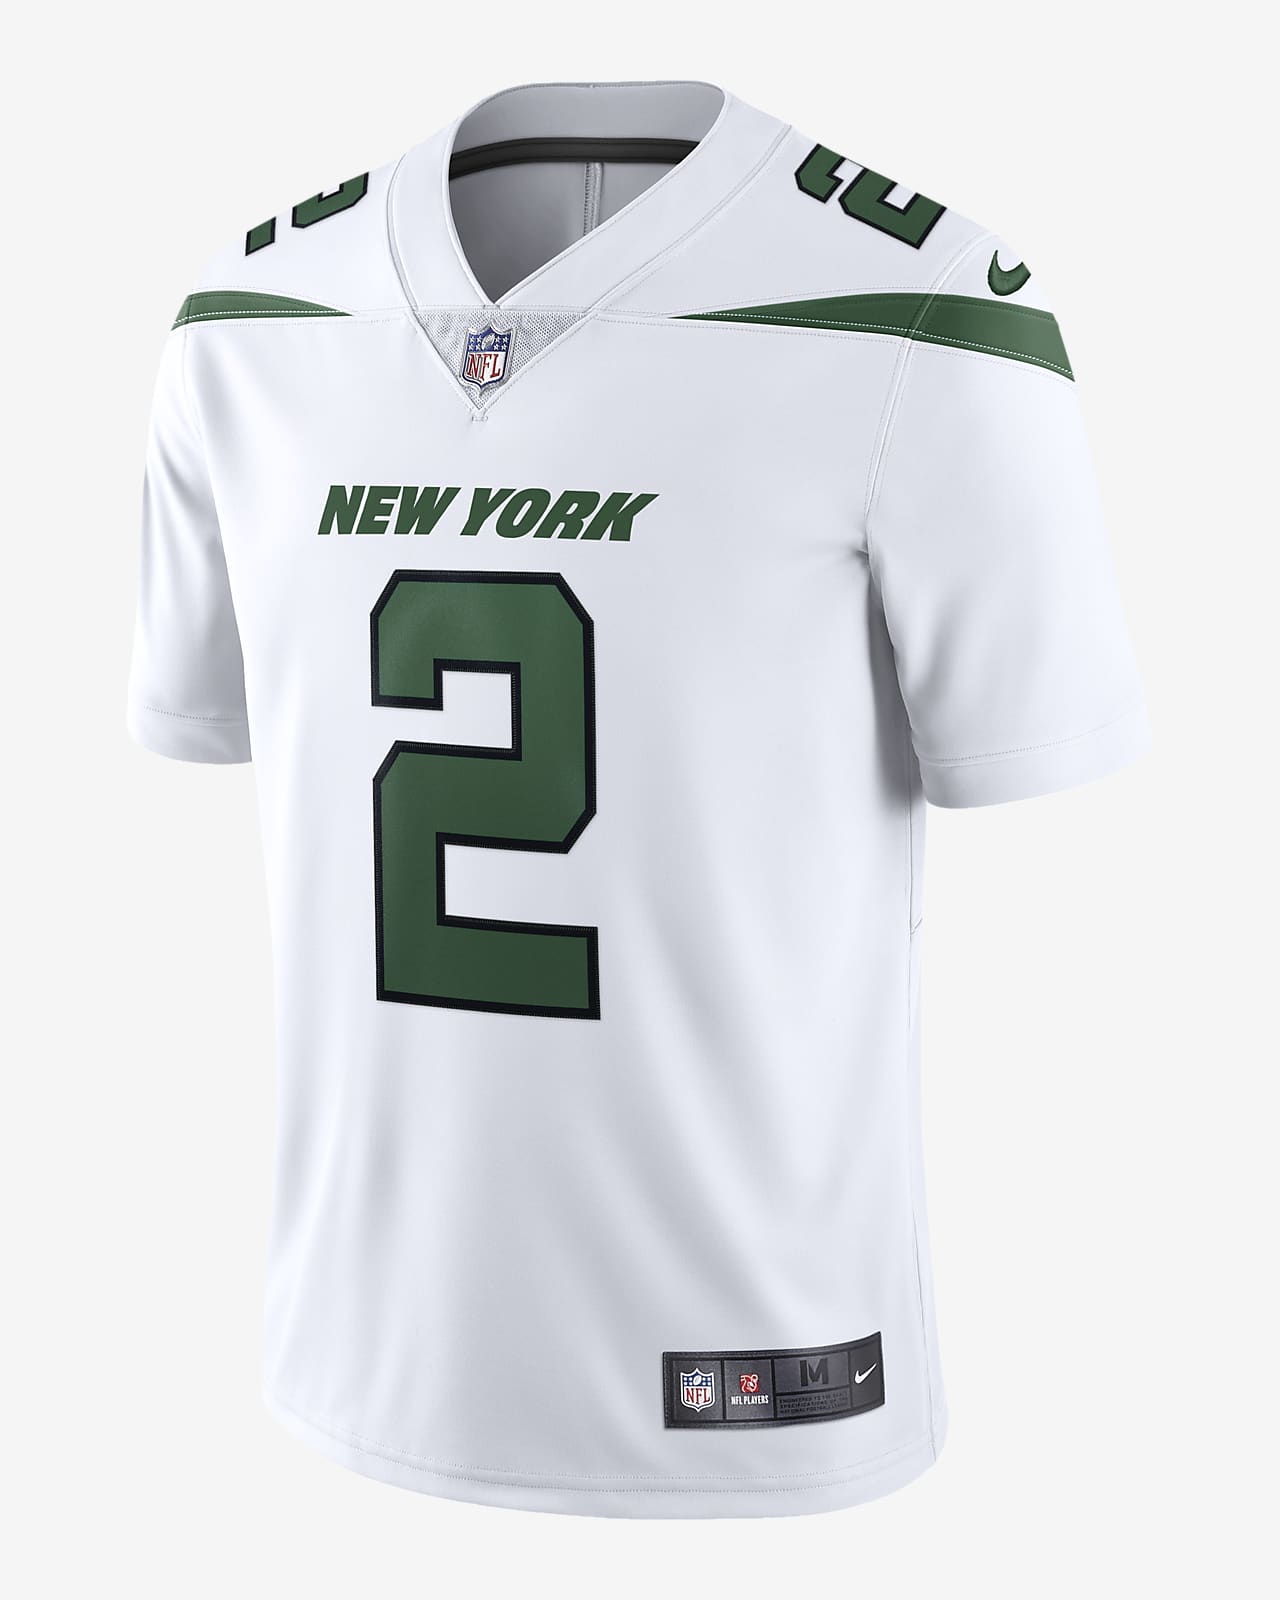 Jersey de edición limitada para hombre New York Nike Vapor Untouchable (Zach Wilson). Nike.com